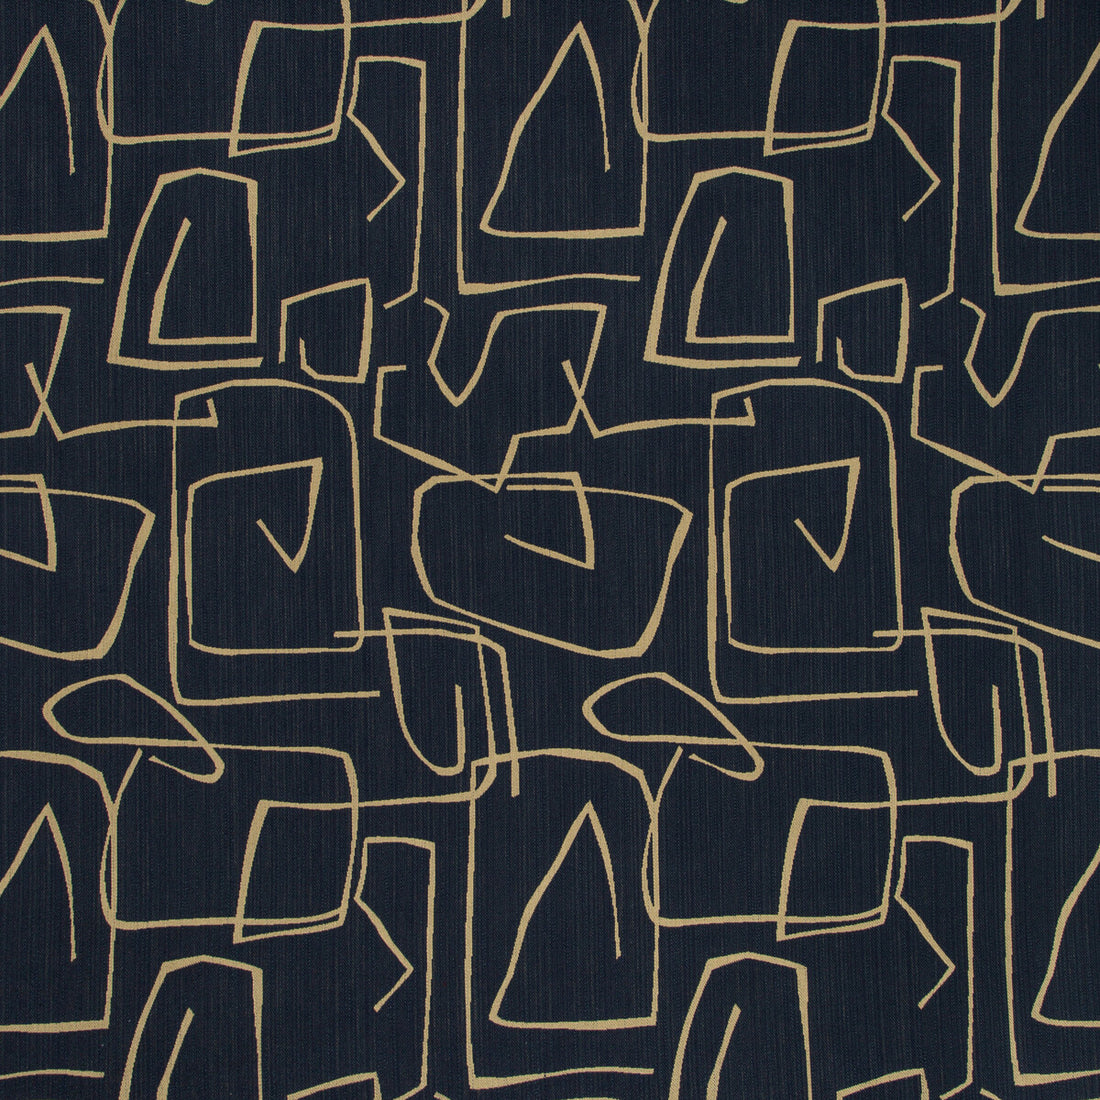 Kravet Design fabric in 35646-516 color - pattern 35646.516.0 - by Kravet Design